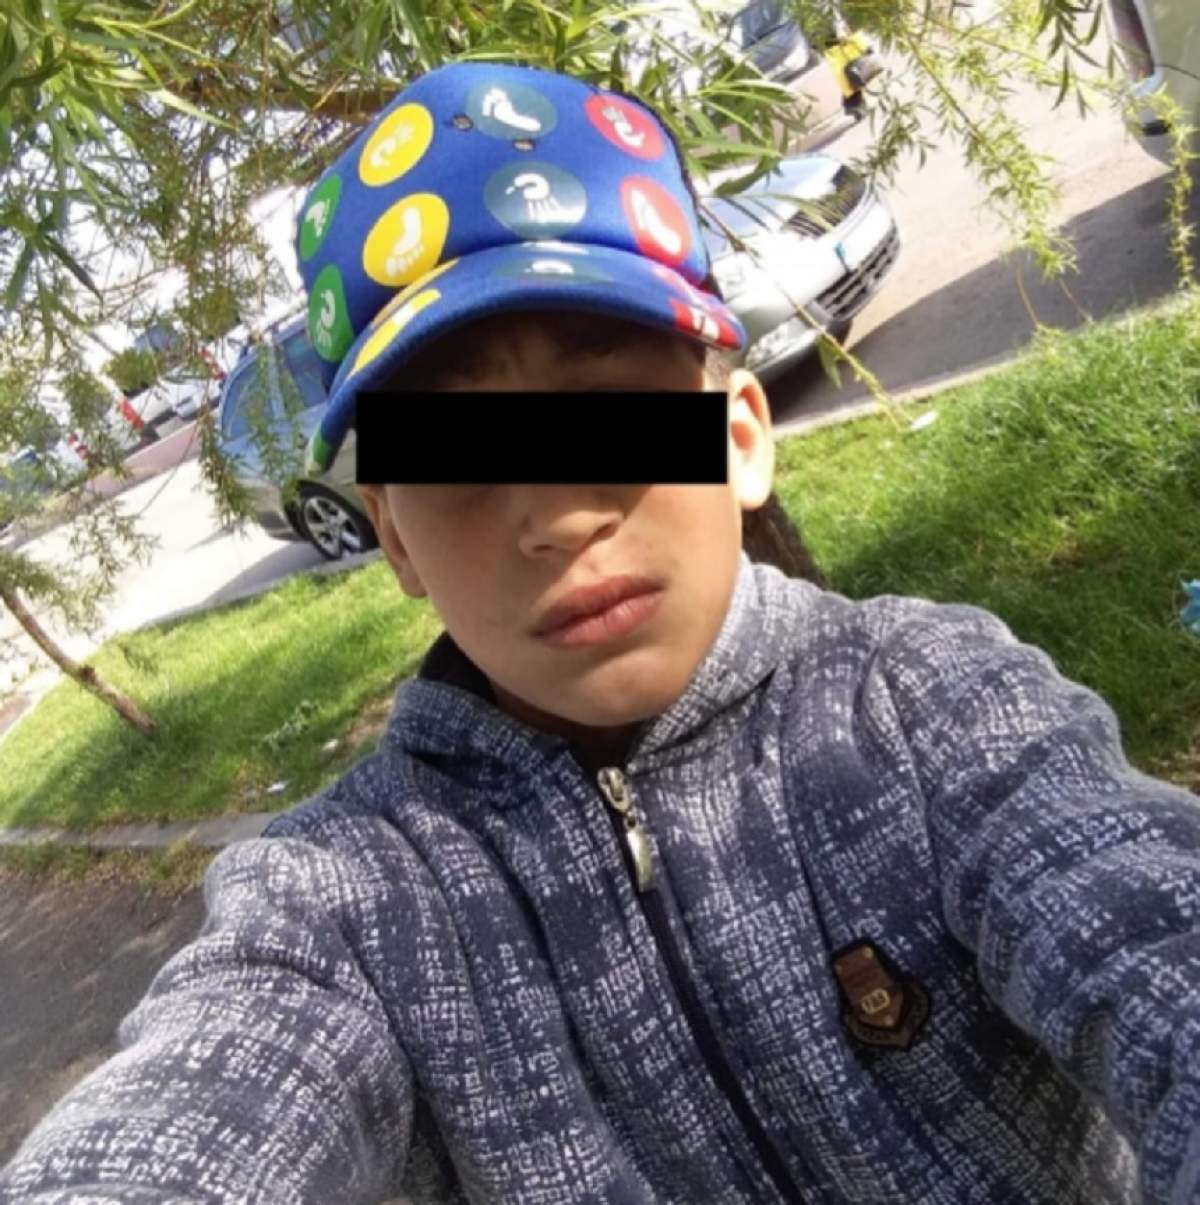 De-a râsu' plânsu'! Un minor din Tulcea a furat un telefon, iar acum îi trimite selfie-uri victimei şi îi înjură şefa